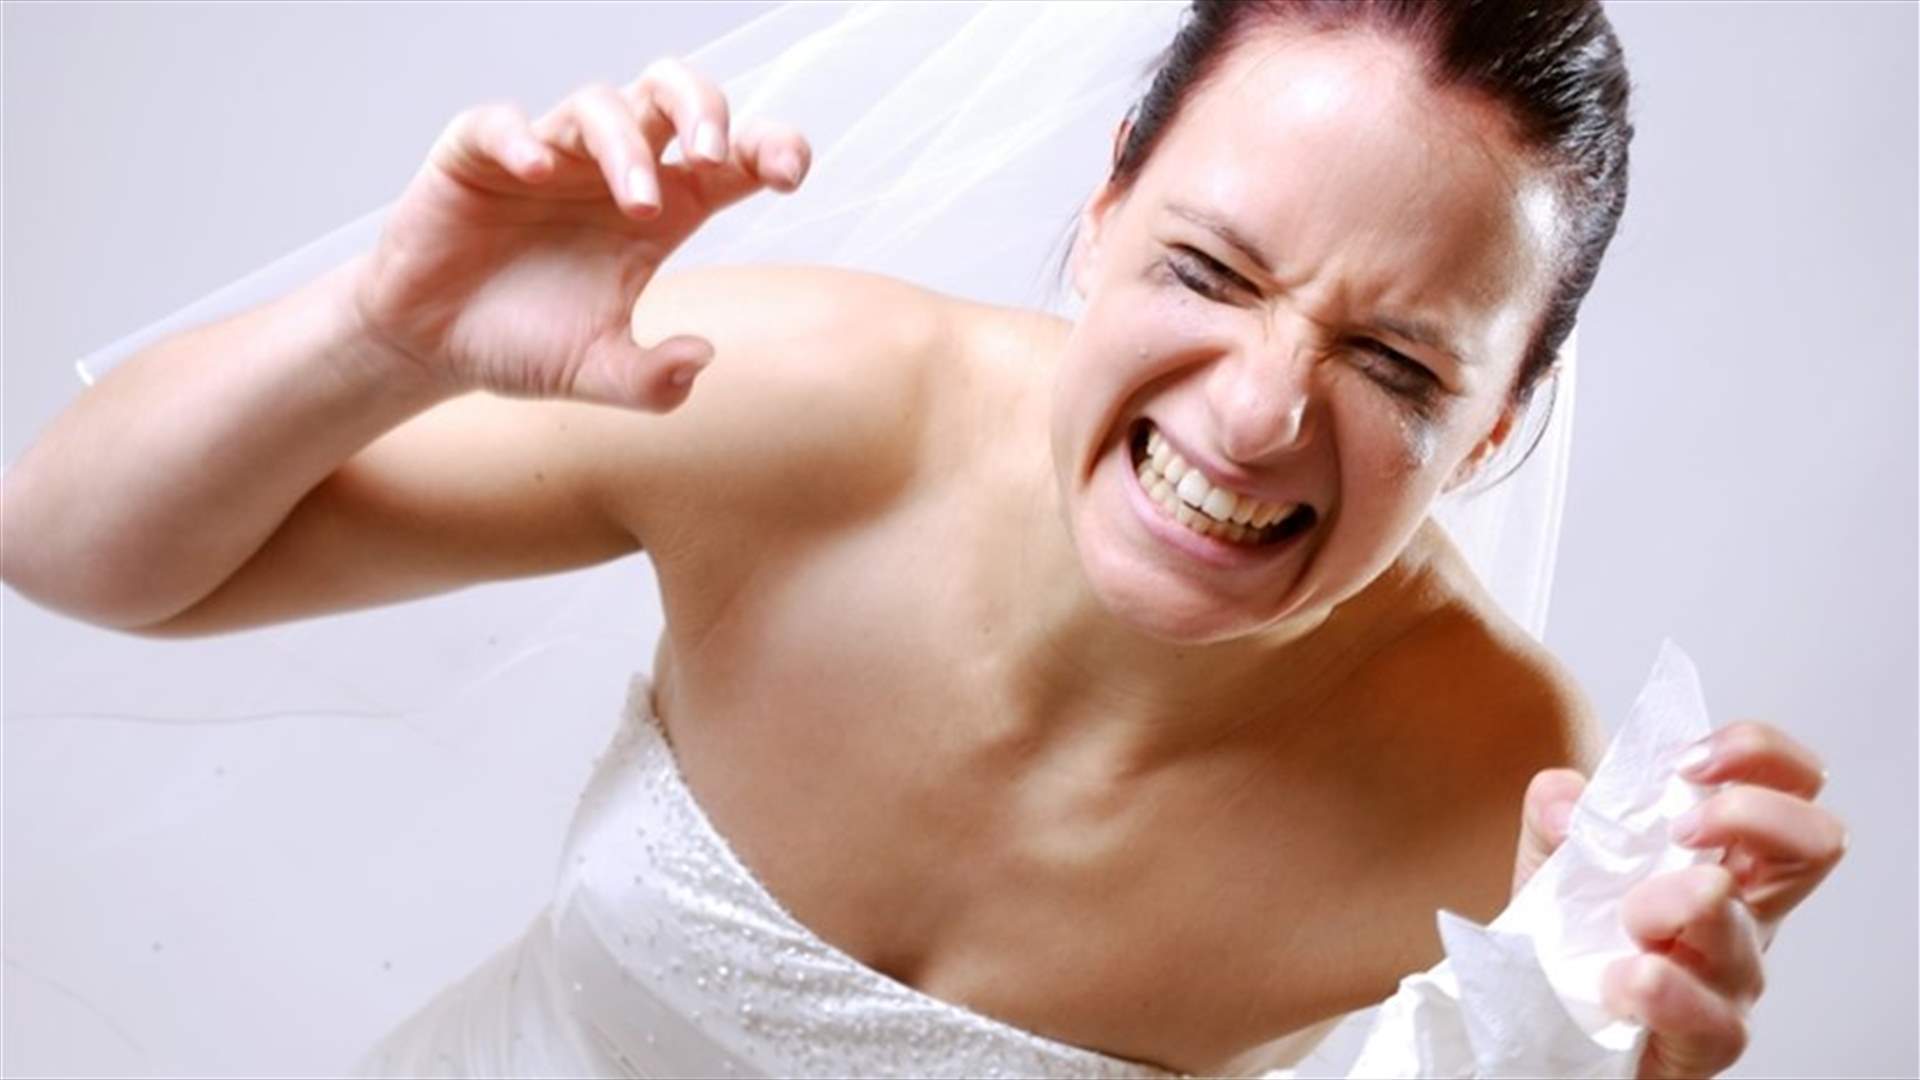 عروس تعرّضت للعنف يوم زفافها... شقيق العريس ضربها وسحبها بفستانها على الدرج